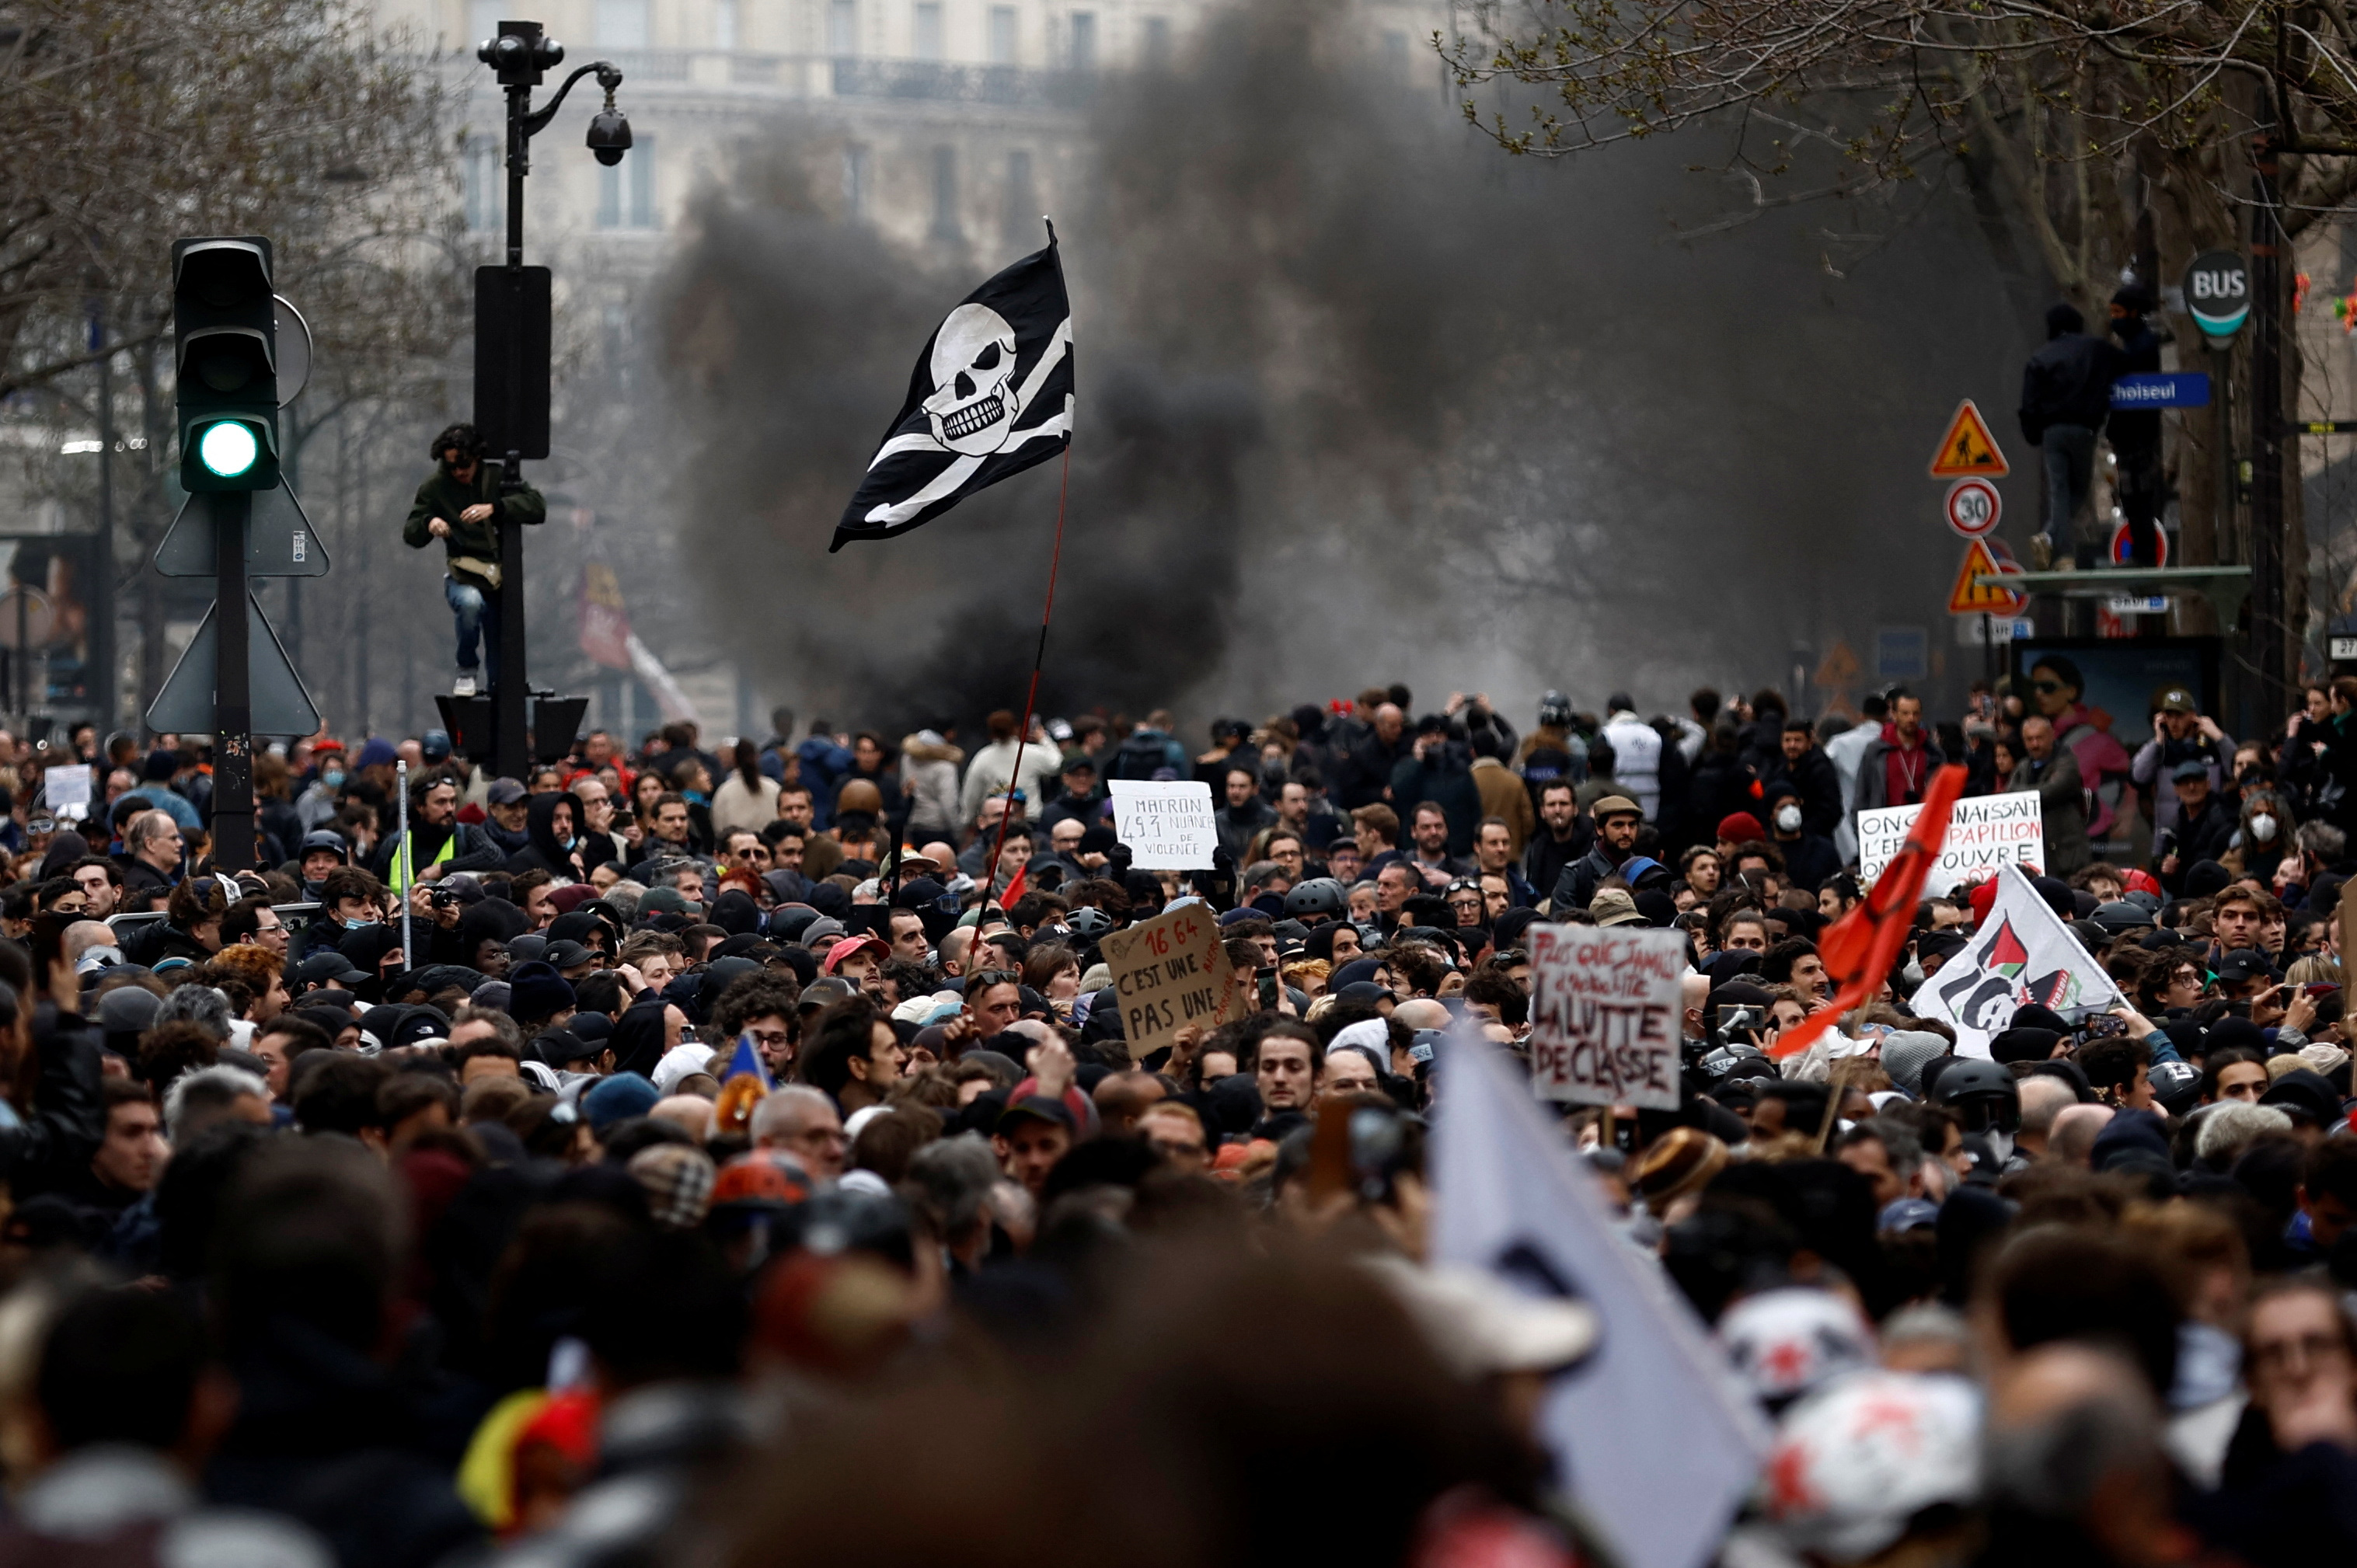 La protesta de este jueves fue la mayor convocatoria de la hisotria en París (REUTERS)